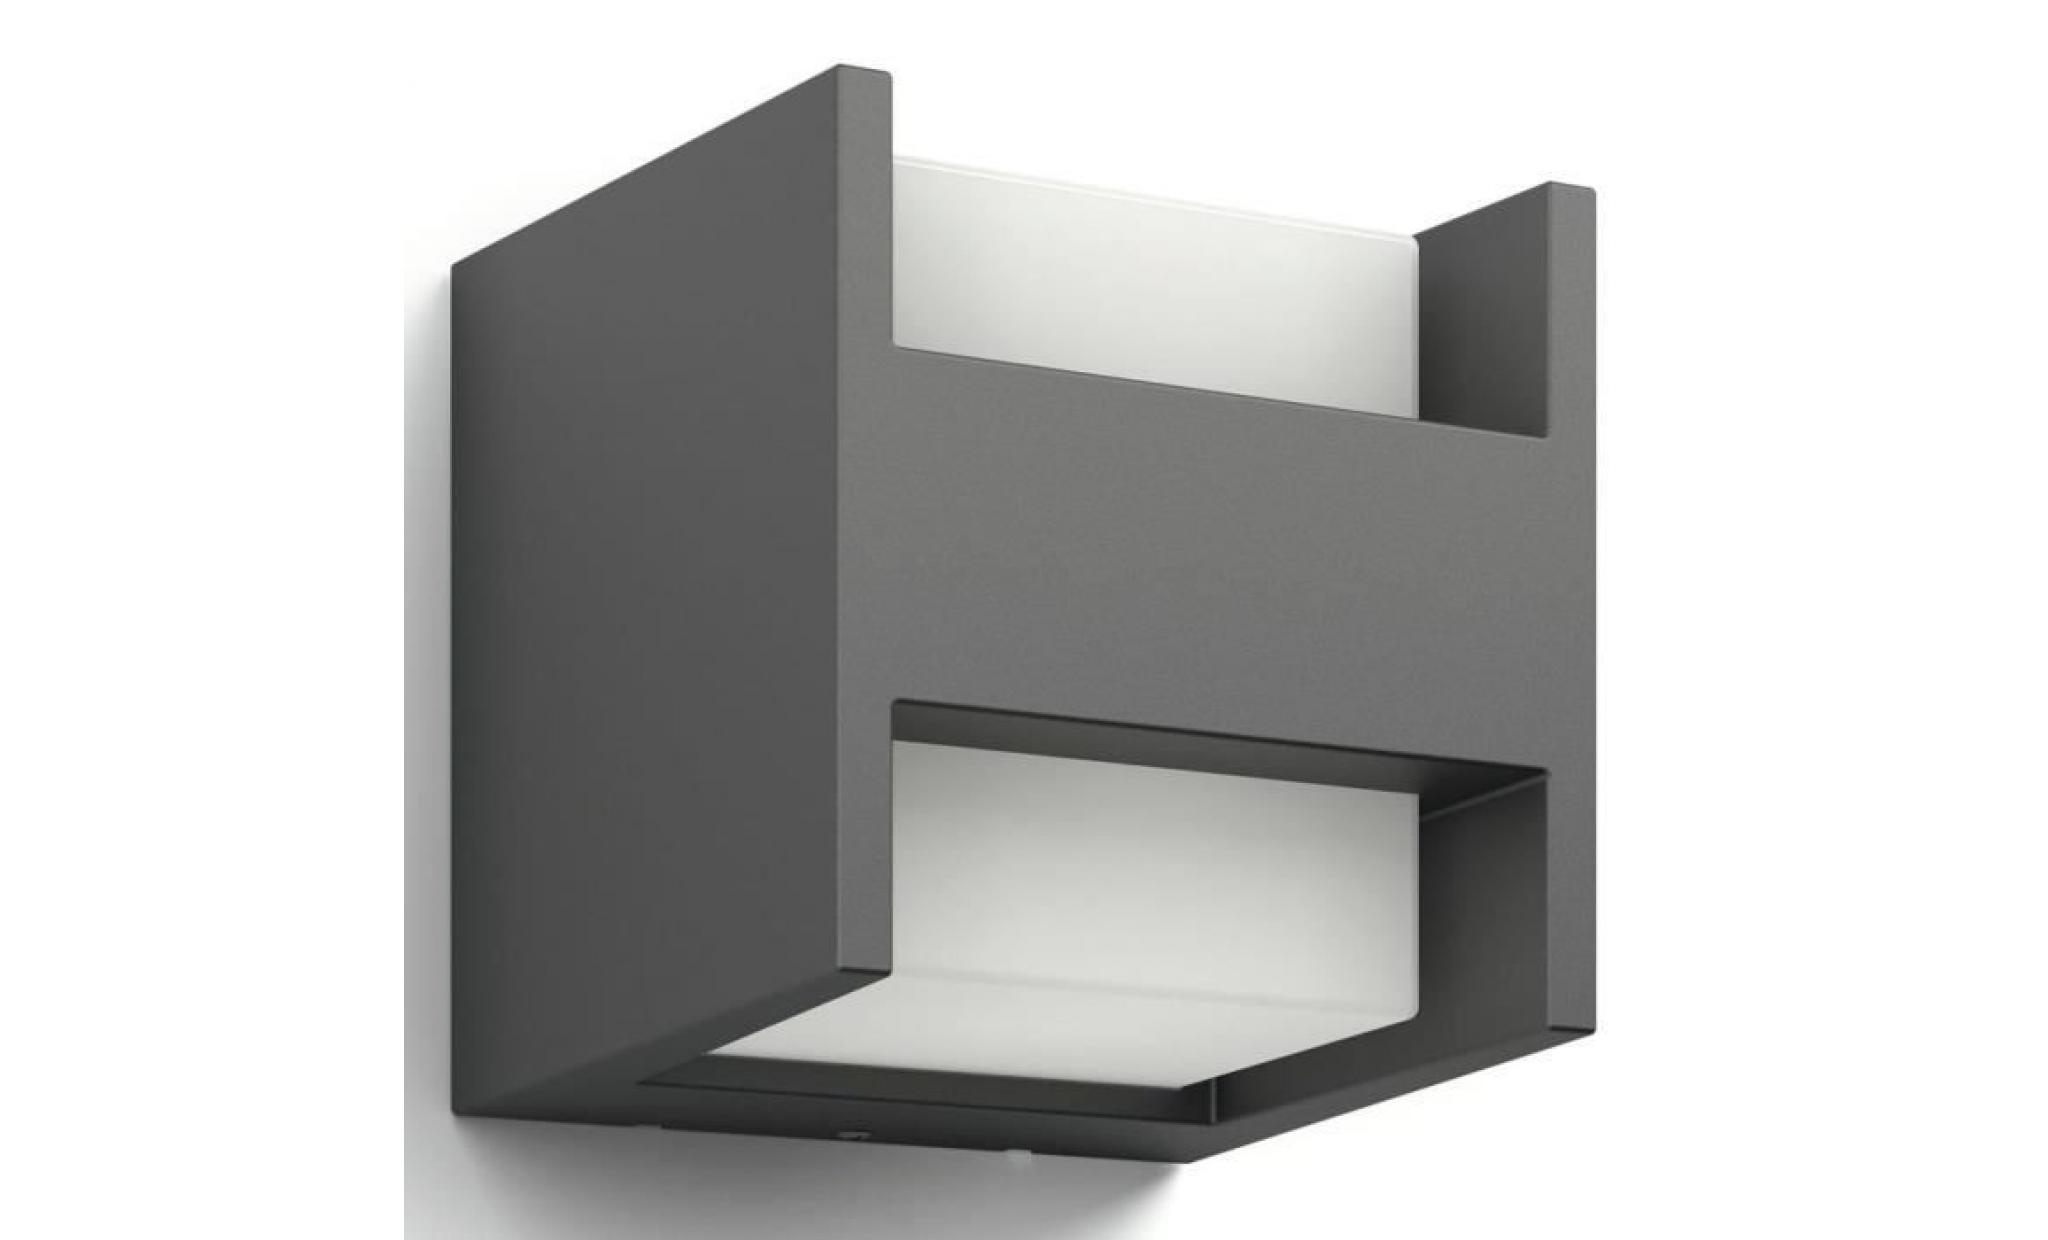 l'applique extérieur carré arbour gris anthracite est composée d'un cube lumineux suspendu dans un support en aluminium moulé pas cher